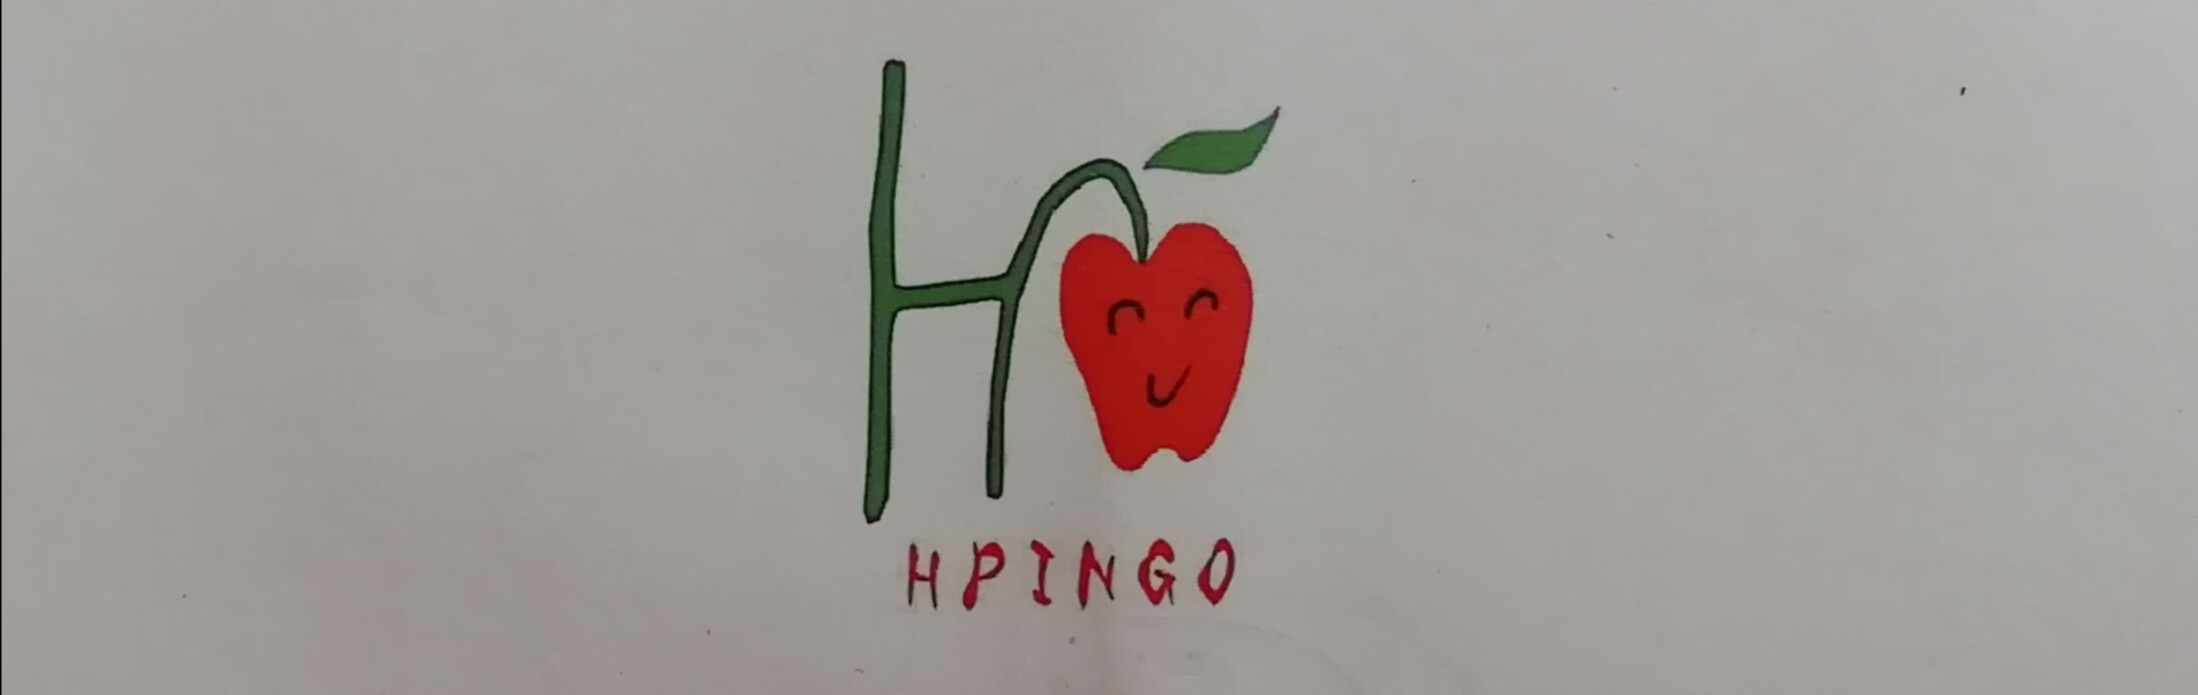 HPINGO